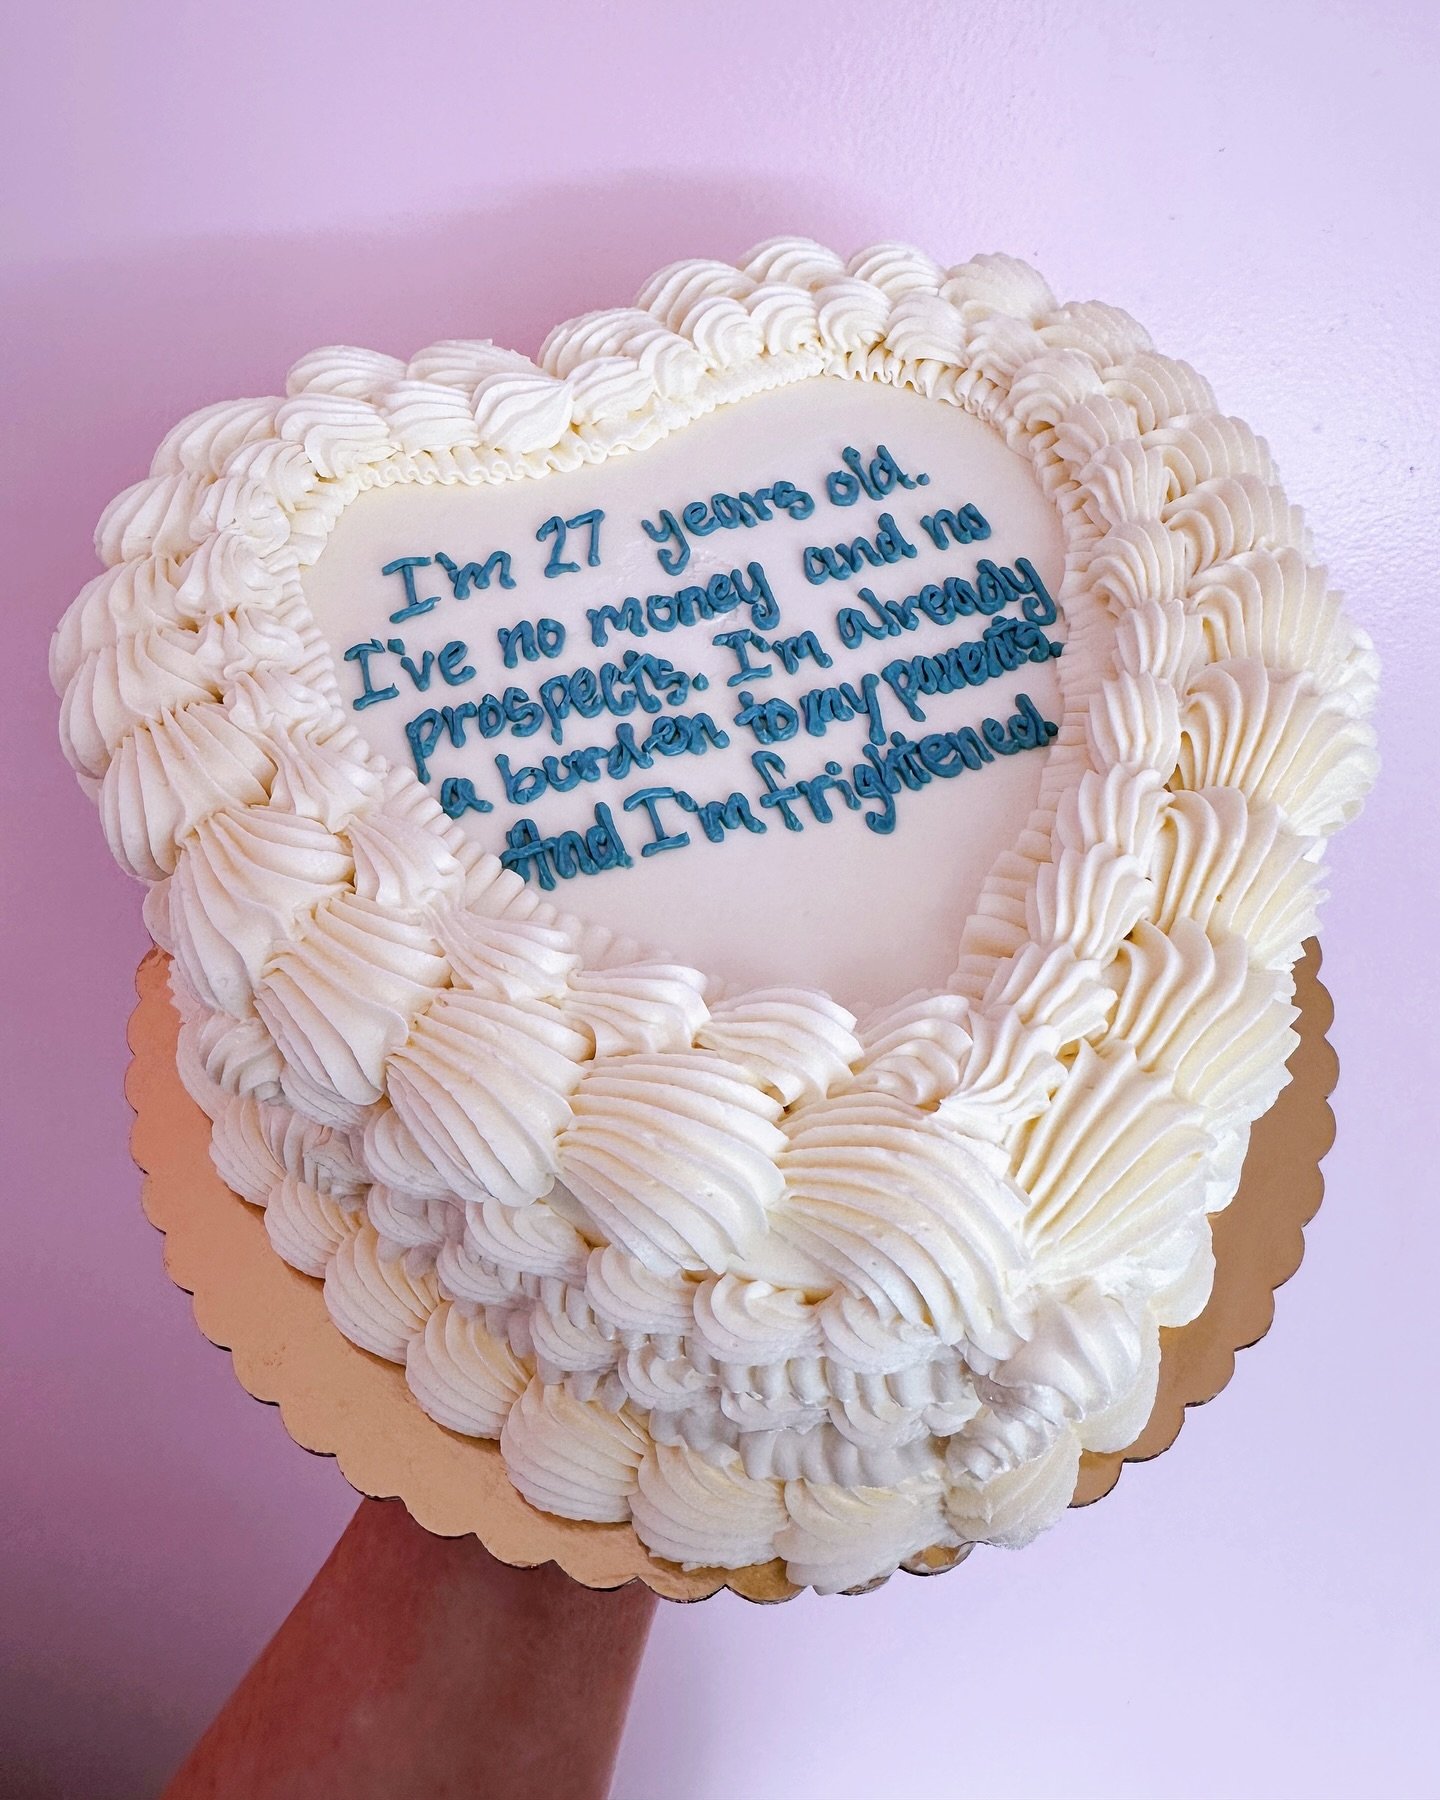 A pride and prejudice themed birthday cake 🩵
&bull;
&bull;
&bull;
&bull;
&bull;
#cake #cakedecorating #cakedesign #cakedecoration #cakecakecake #cakeoftheday #cakelover #birthdaycake #birthday #nashville #nashvillecake #franklintn #franklin